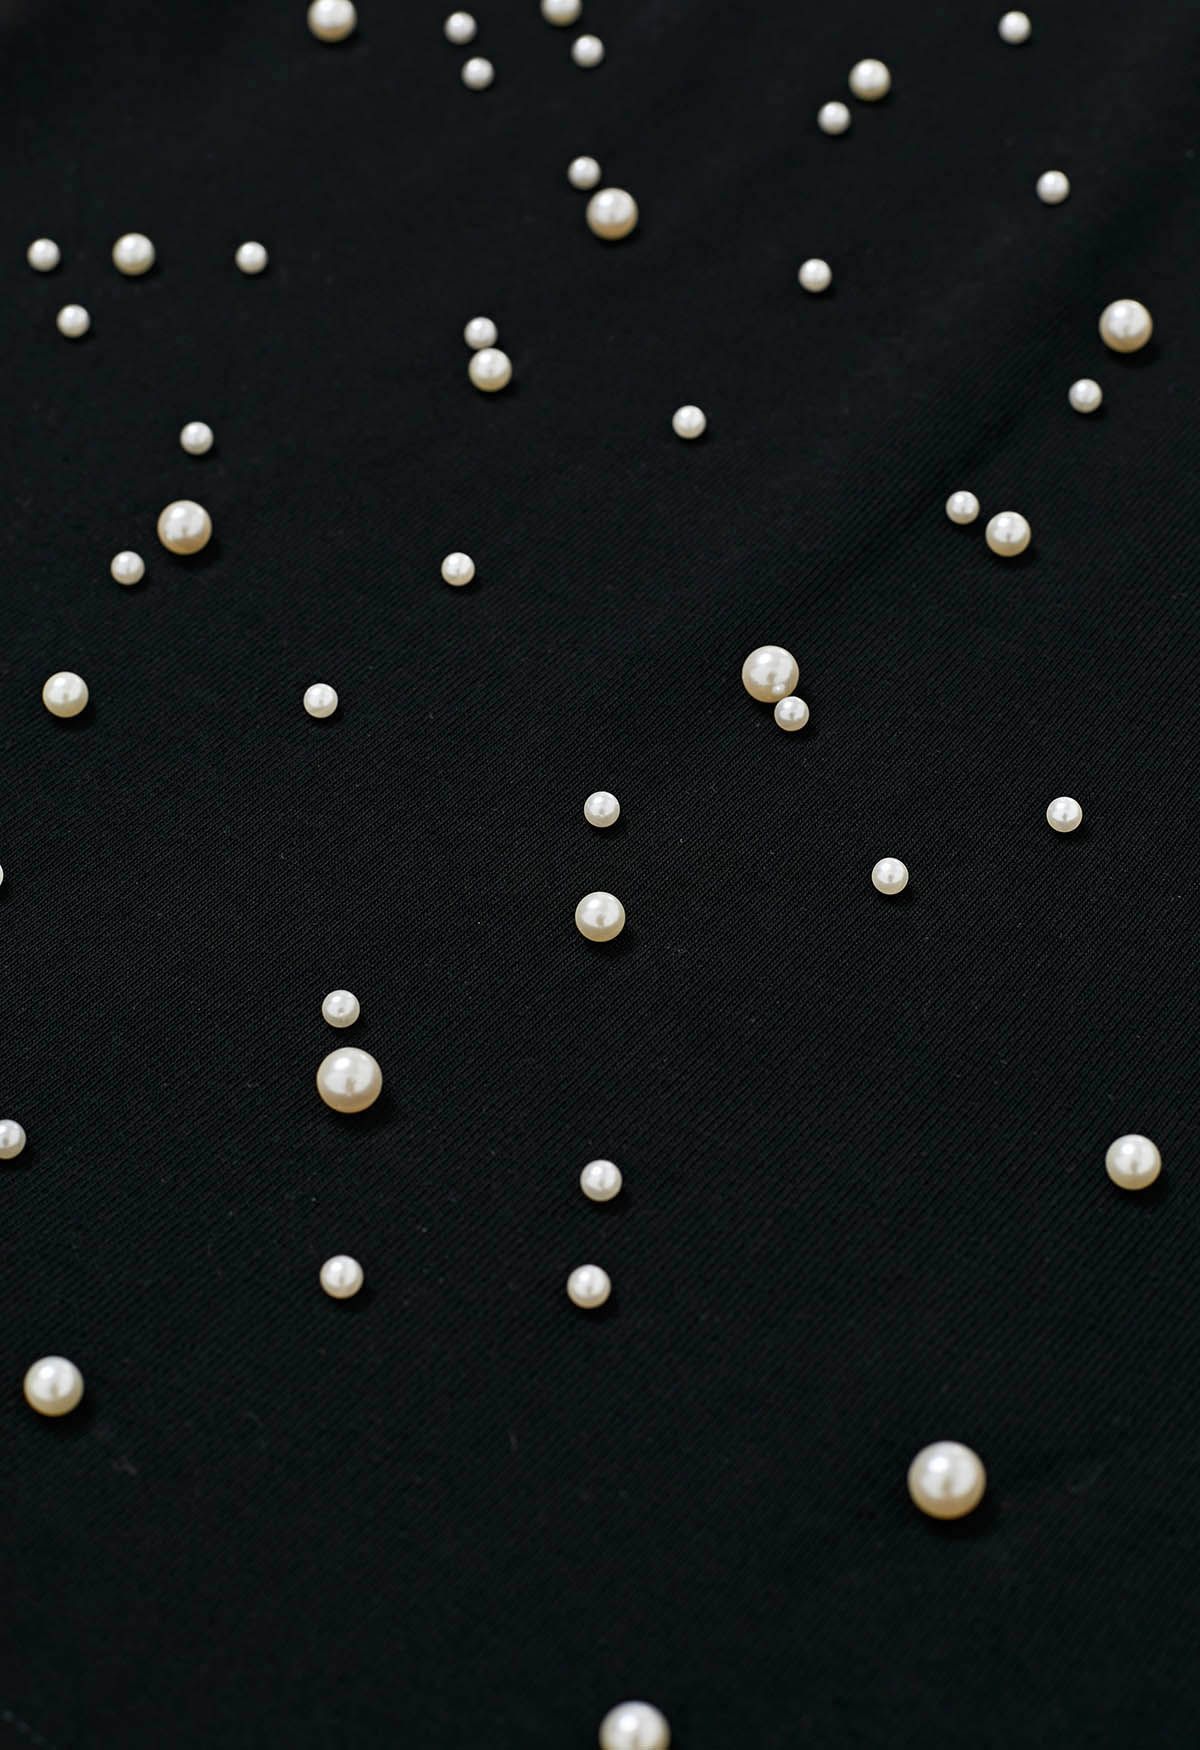 Camiseta sofisticada con ribete de perlas en negro